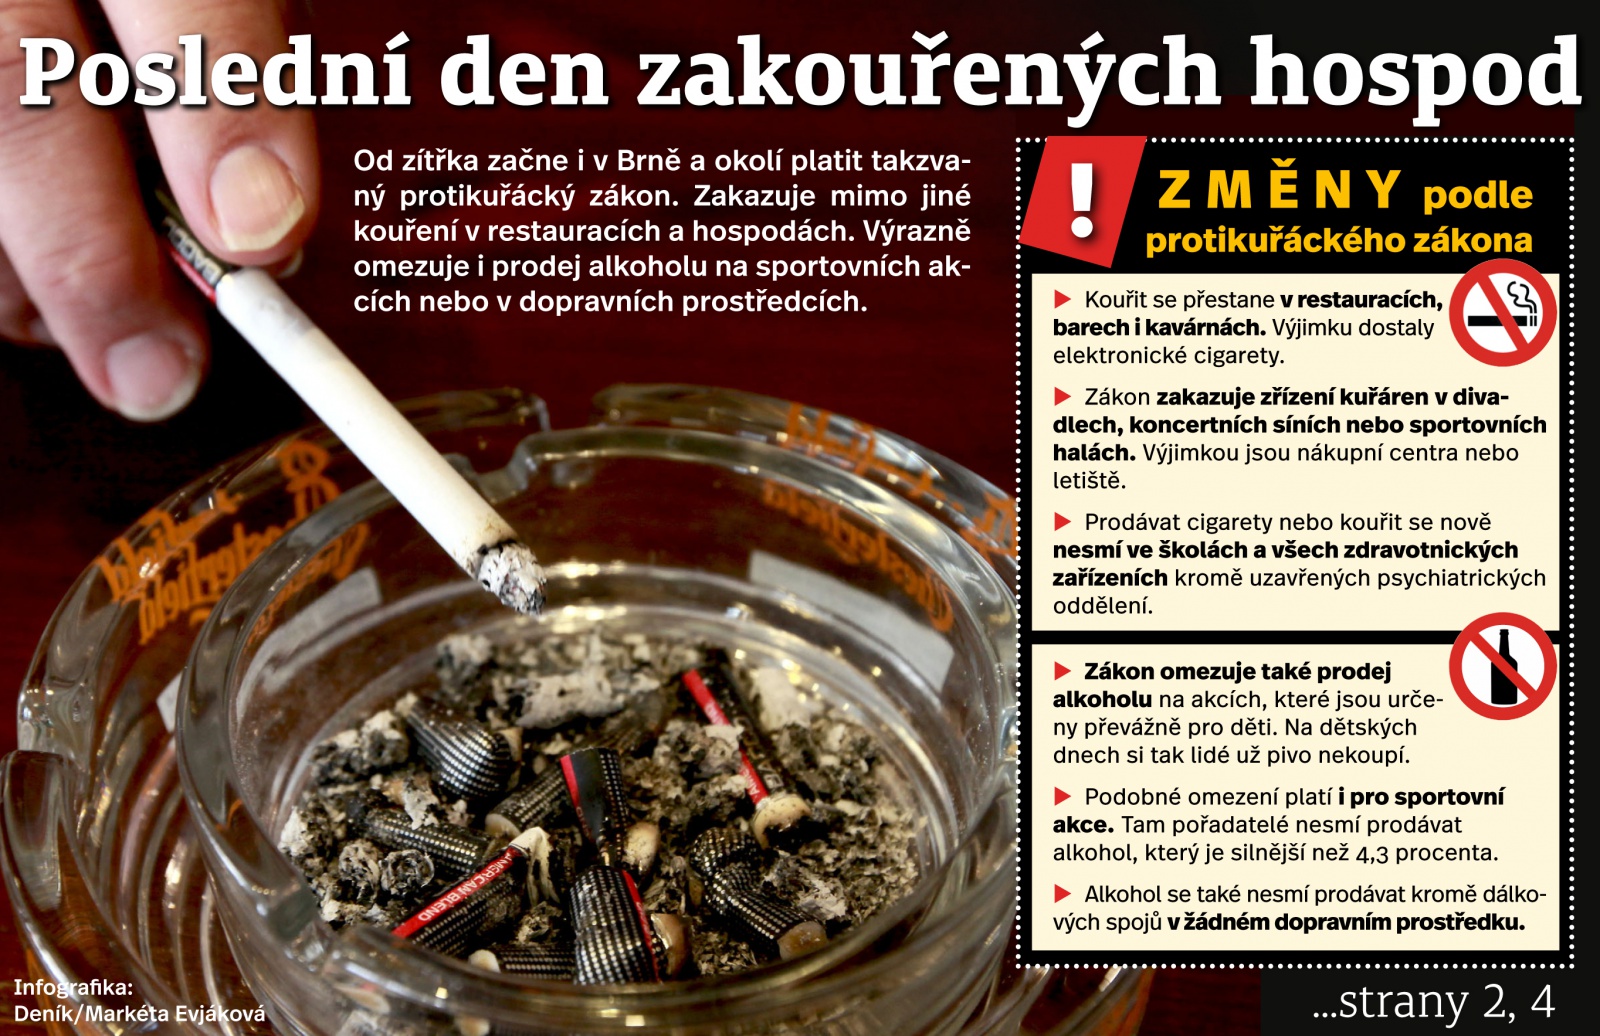 Poslední den kouření v hospodách: Kuřáci mi říkali, že chodit nebudou,  tvrdí muž - Hodonínský deník